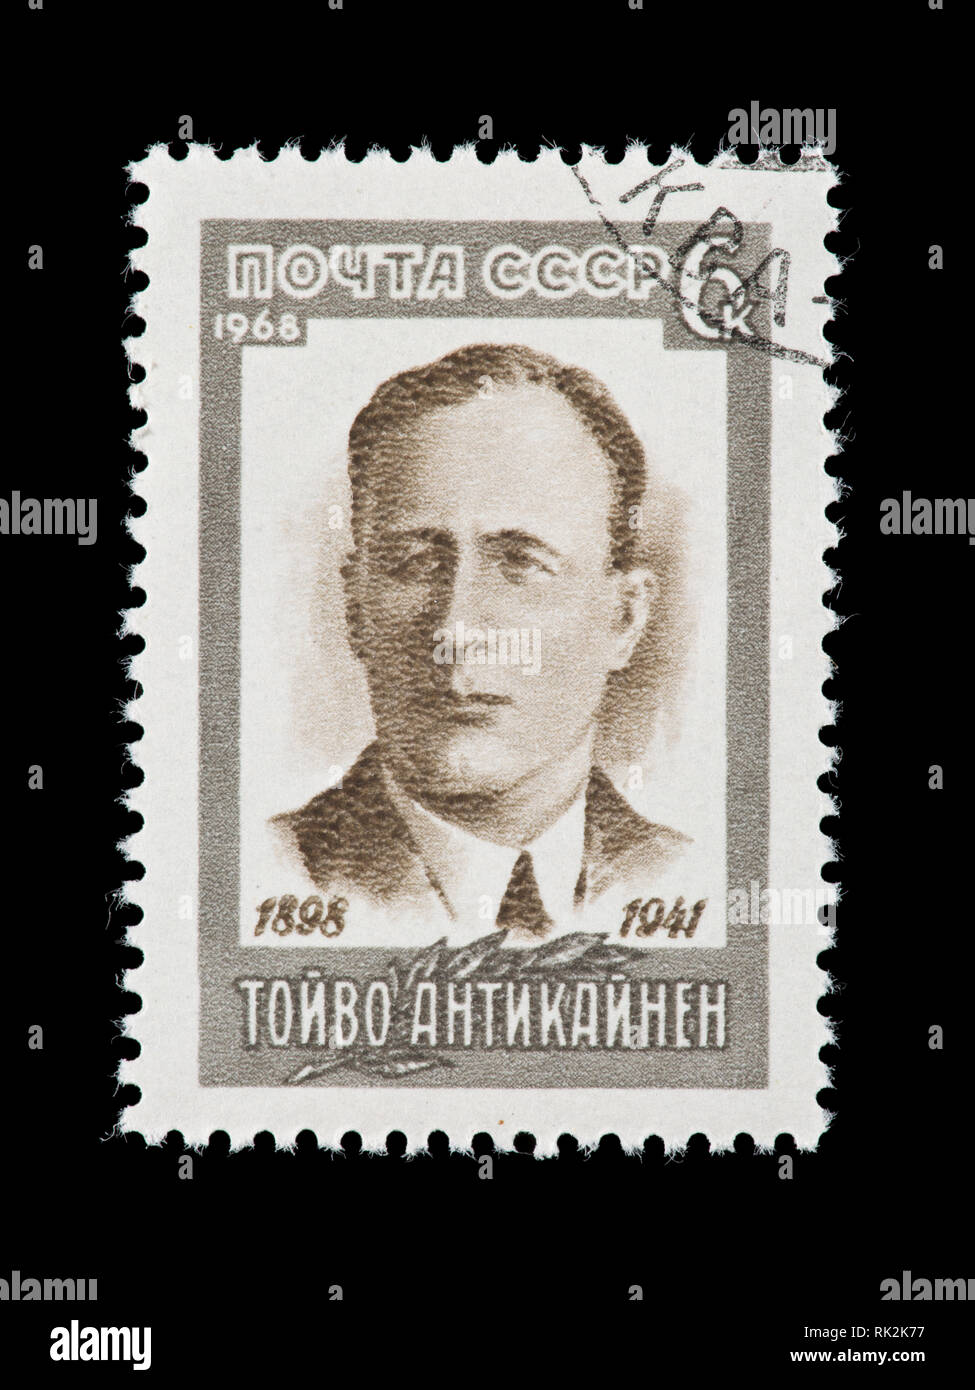 Briefmarke aus der Sowjetunion, die Toyvo Antikaynen, finnischen Arbeiter Veranstalter. Stockfoto